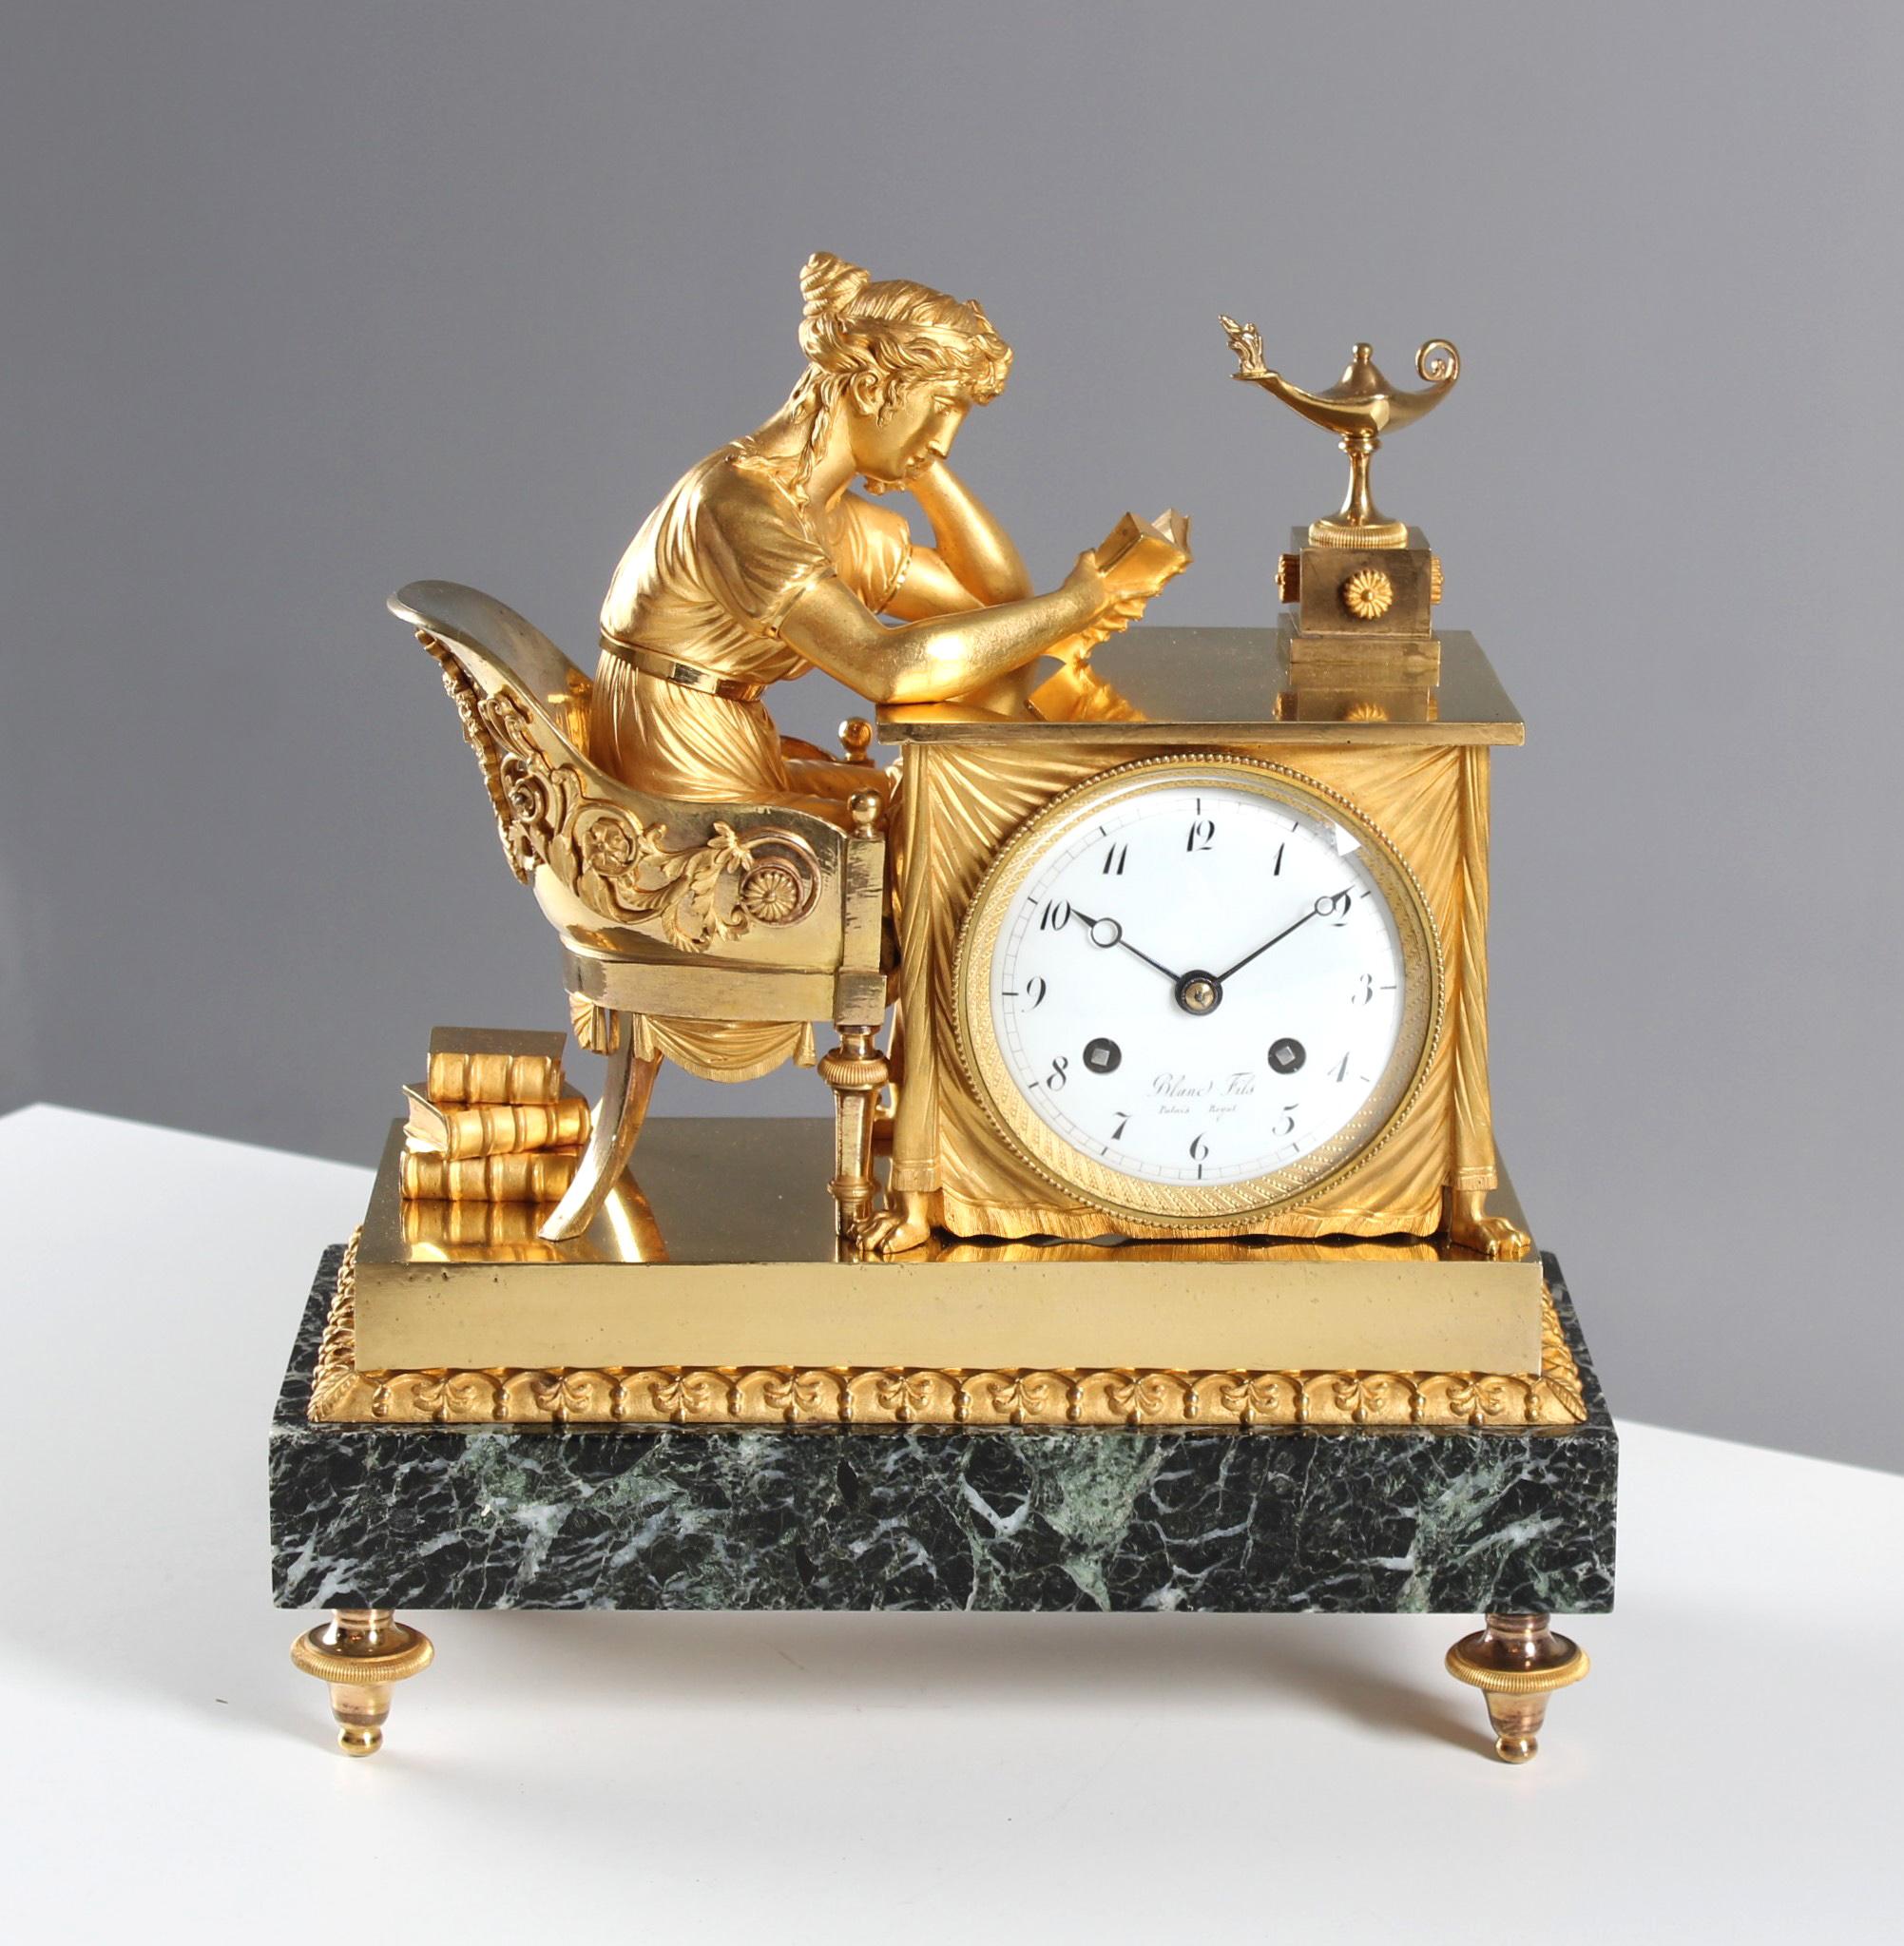 Empire Pendule La Lieuse - The Reader

Paris
bronze, marble, enamel
Empire around 1810

Dimensions: H x W x D: 32 x 30 x 15 cm

Description:
The pendule 